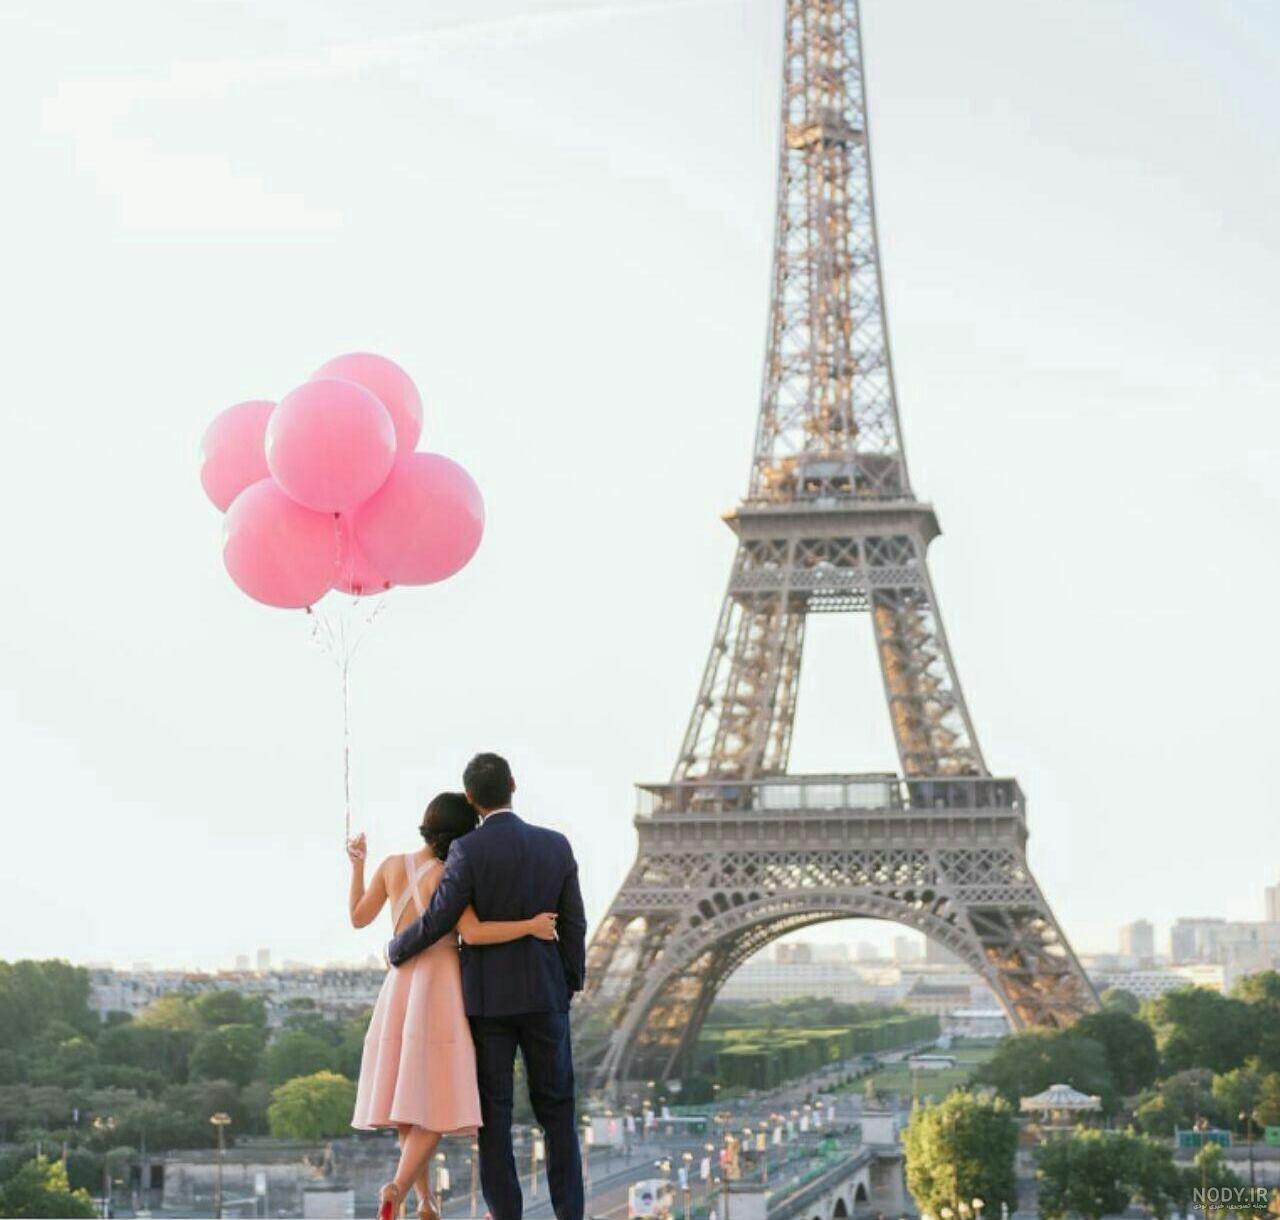 جملات عاشقانه فرانسوی + مجموعه عکس نوشته عاشقانه فرانسوی با ترجمه ...